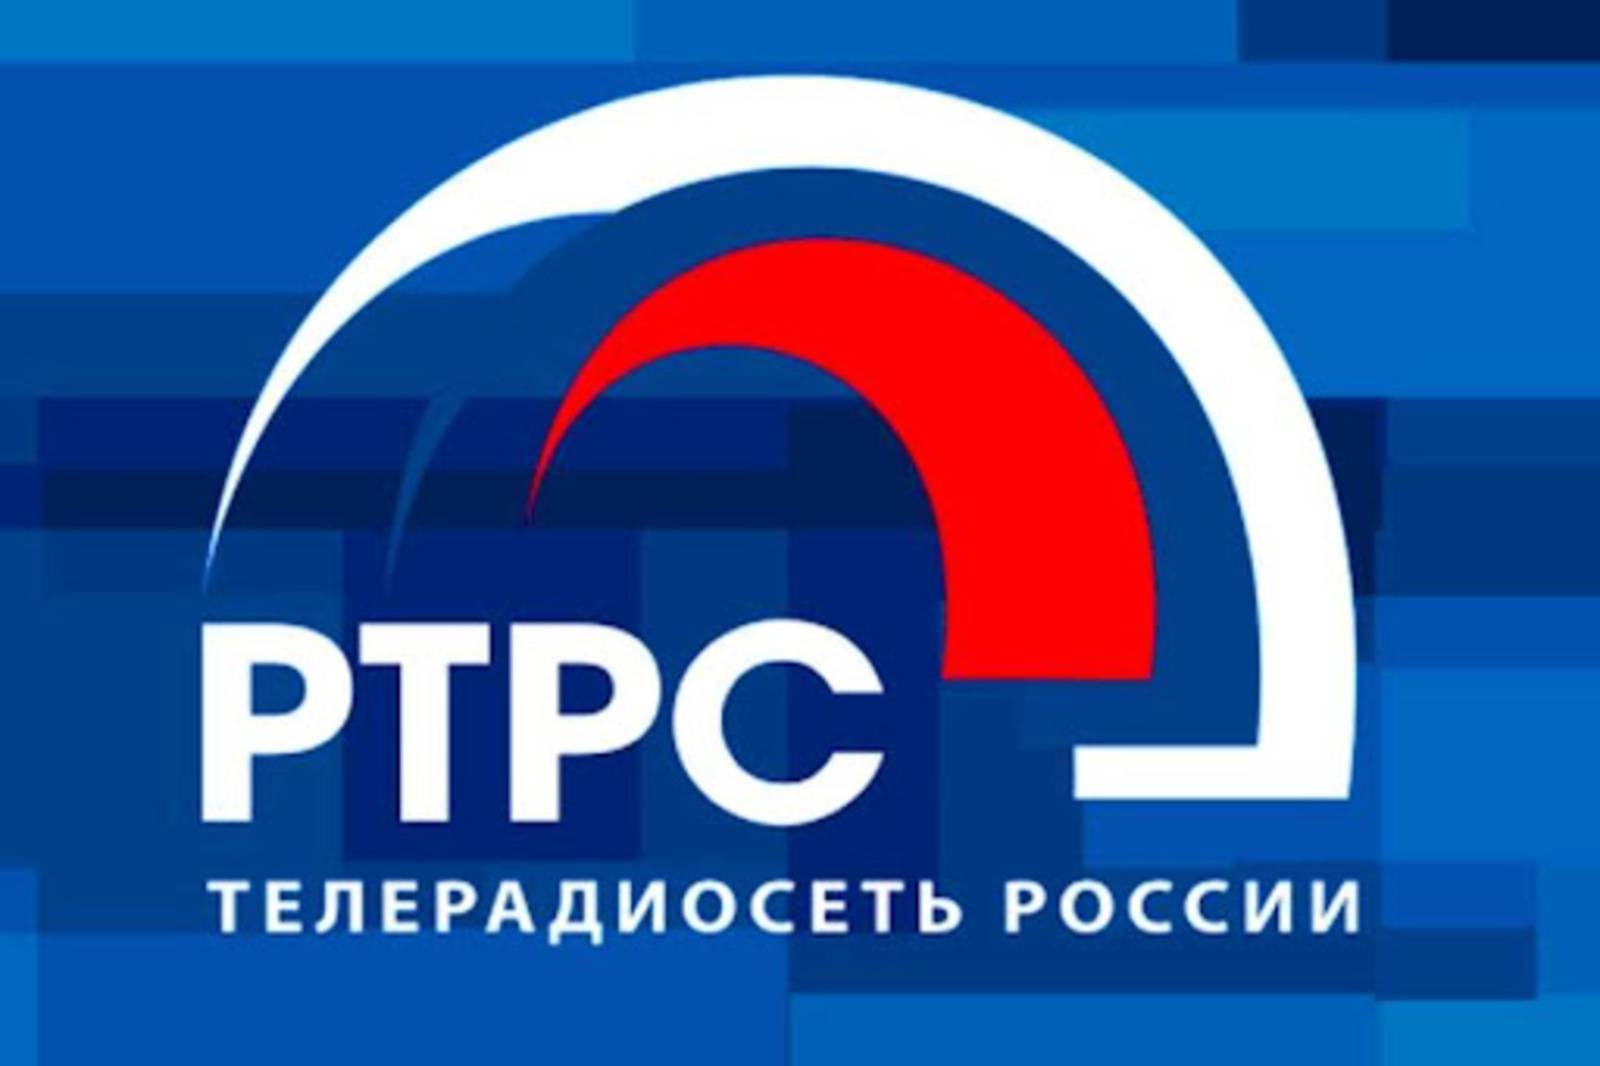 Российская телевизионная радиовещательная сеть (РТРС) отмечает 20-летие